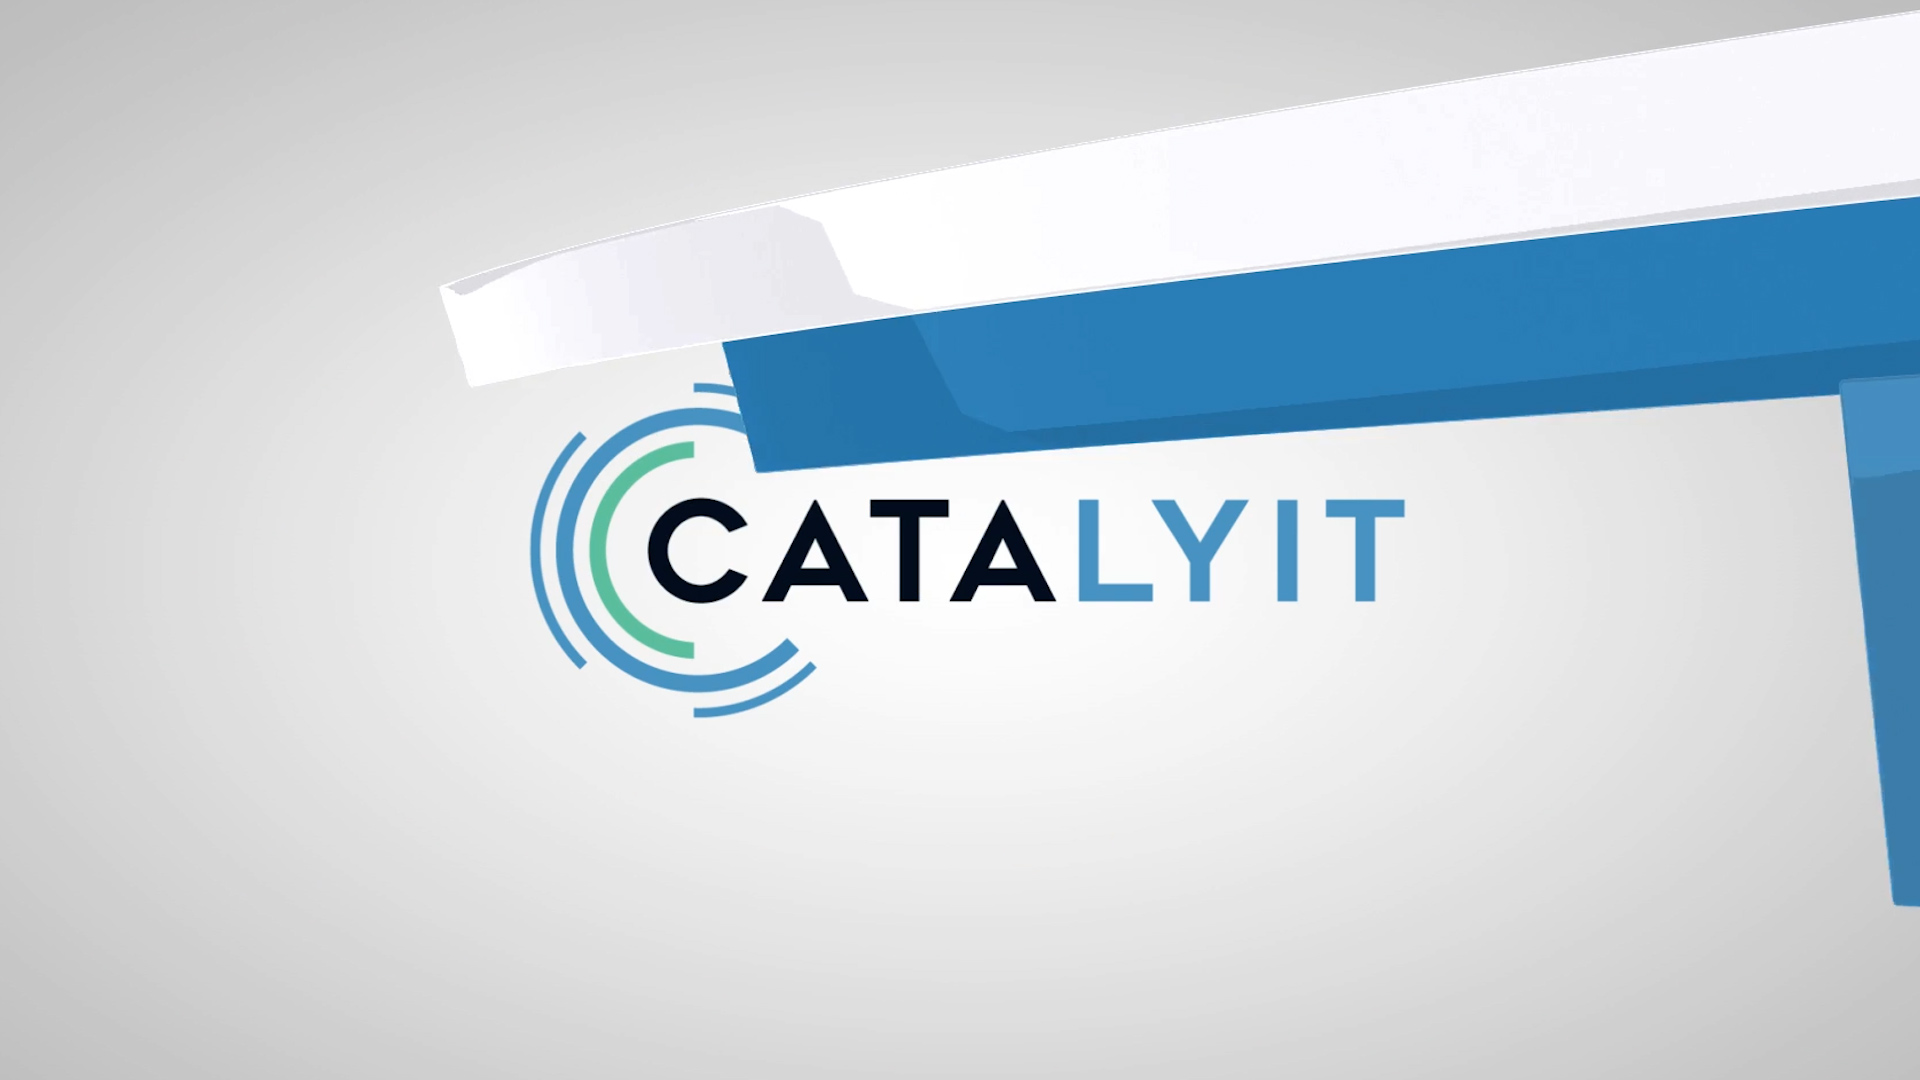 Catalyit